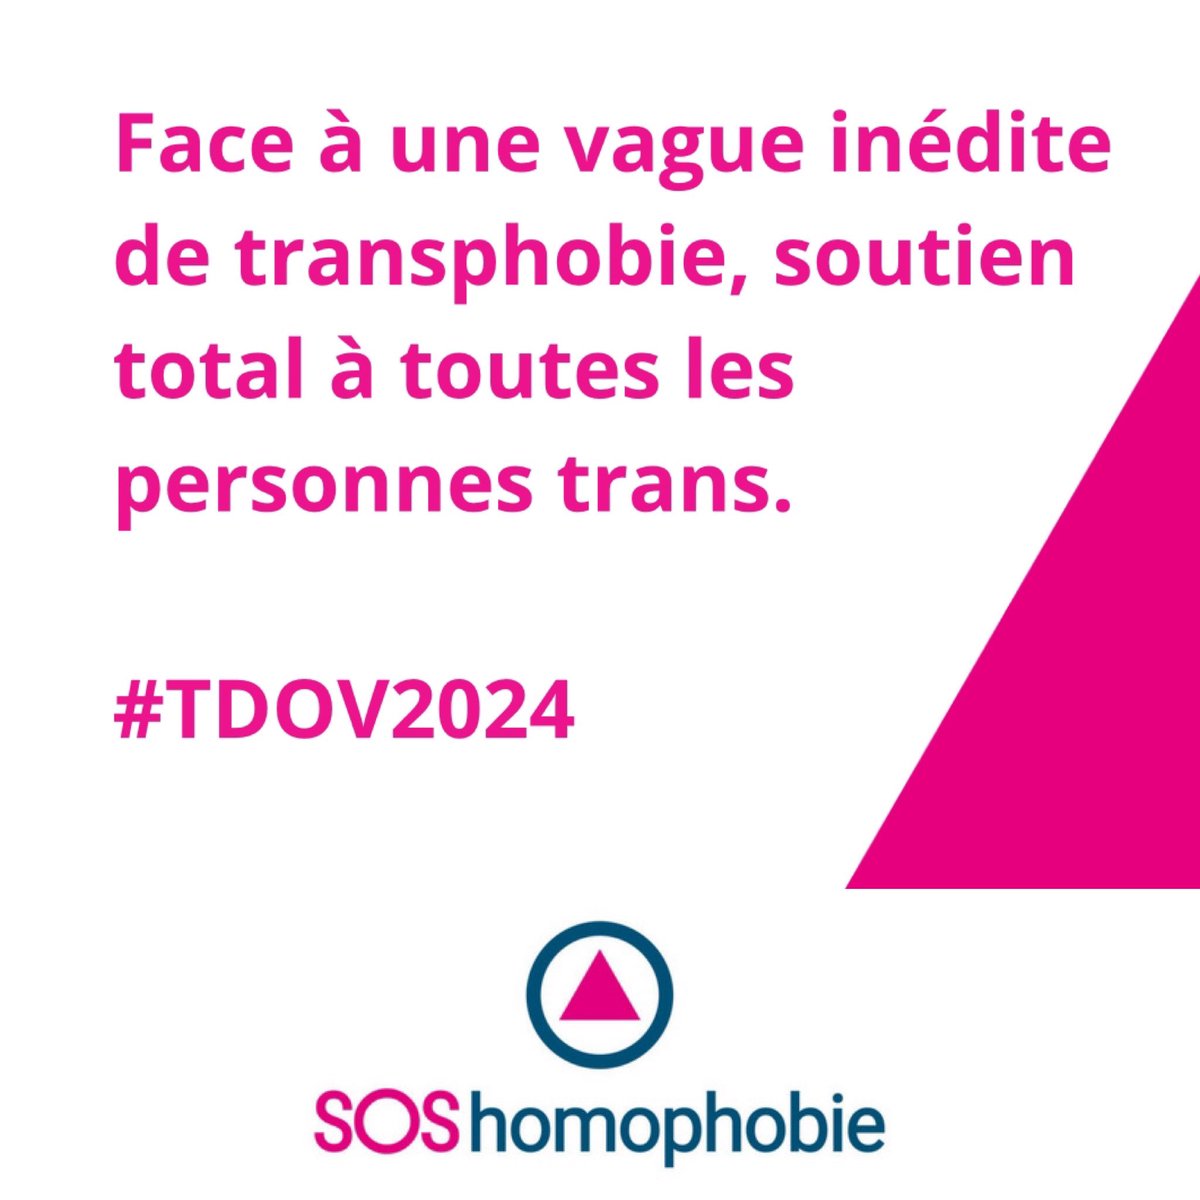 Nous exprimons notre soutien à toutes les personnes #trans en ce 31 mars, journée de la visibilité trans, alors qu’une vague transphobe inédite monte en France et dans le monde. Nous appelons les pouvoirs publics à faire front et à agir pour l’égalité. #TDoV #TransDayofVisibility